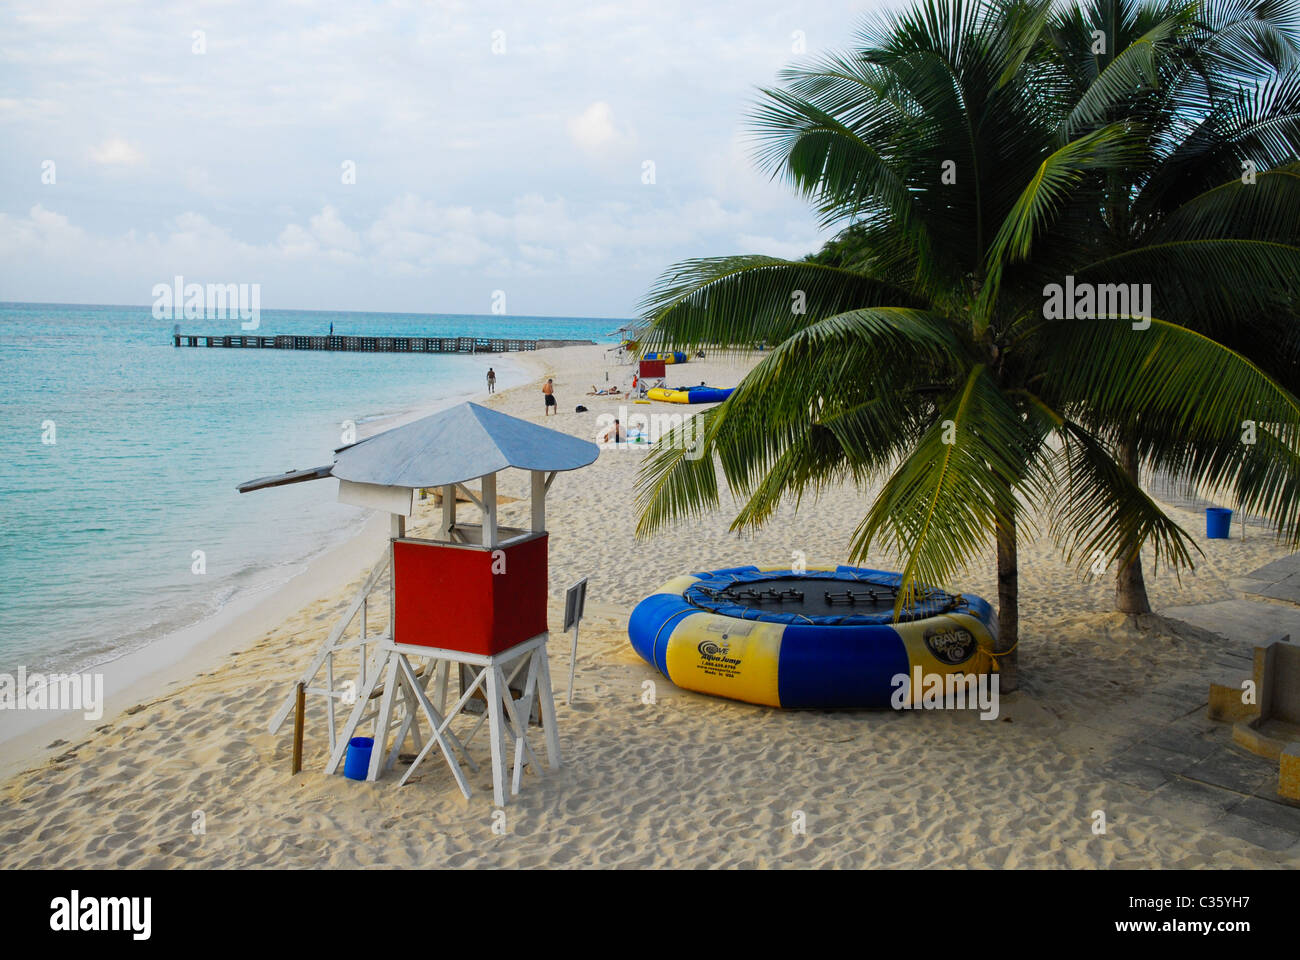 La playa Doctors Cave Beach Club de baño privado en Montego Bay, Jamaica Foto de stock